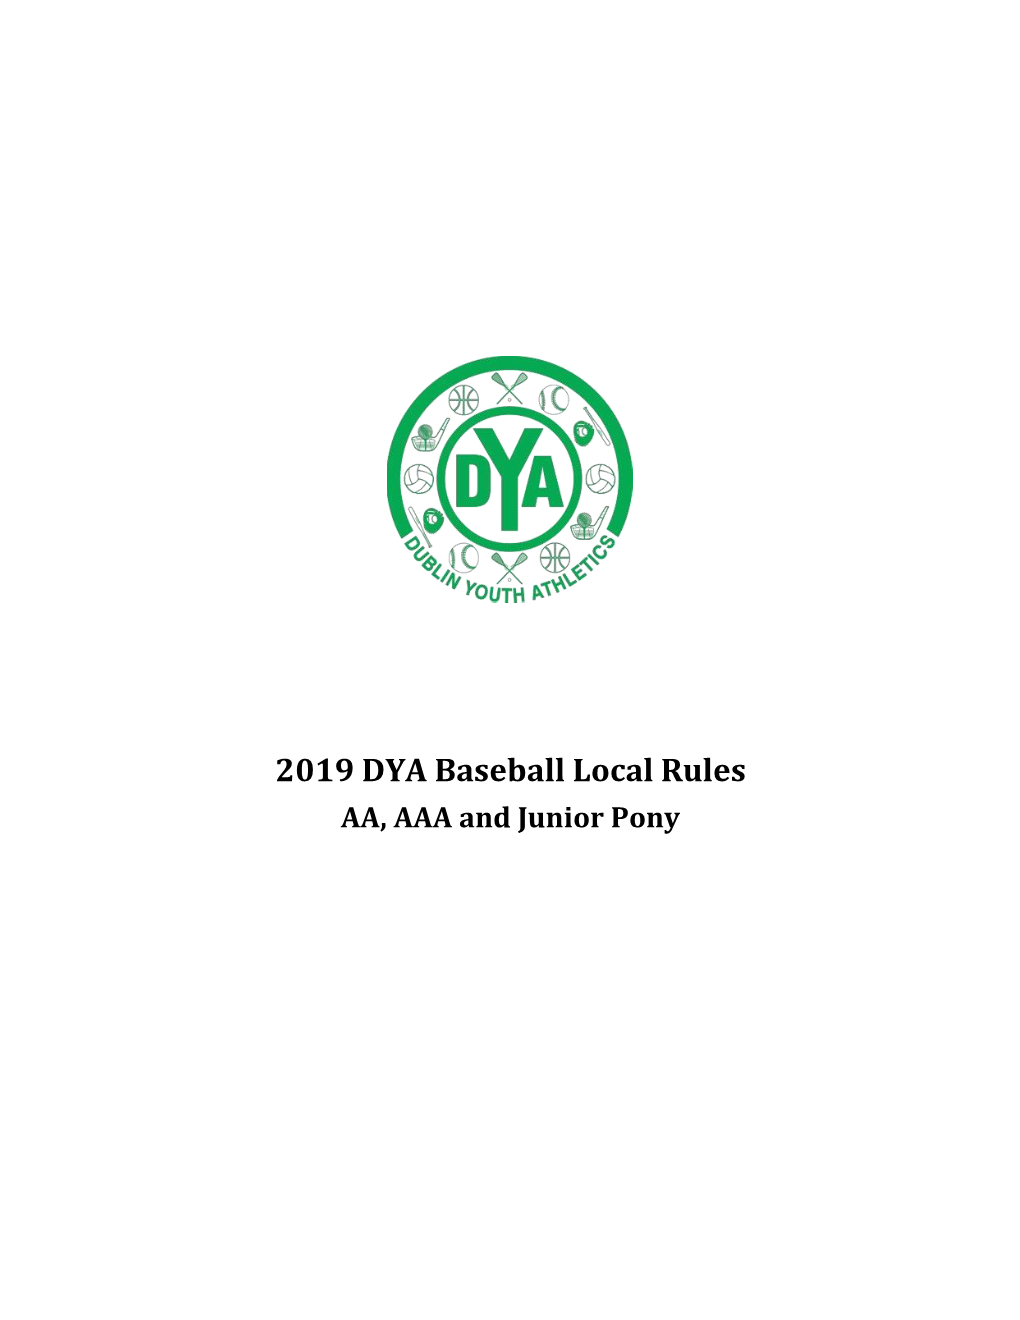 2019 DYA Baseball Local Rules AA, AAA and Junior Pony